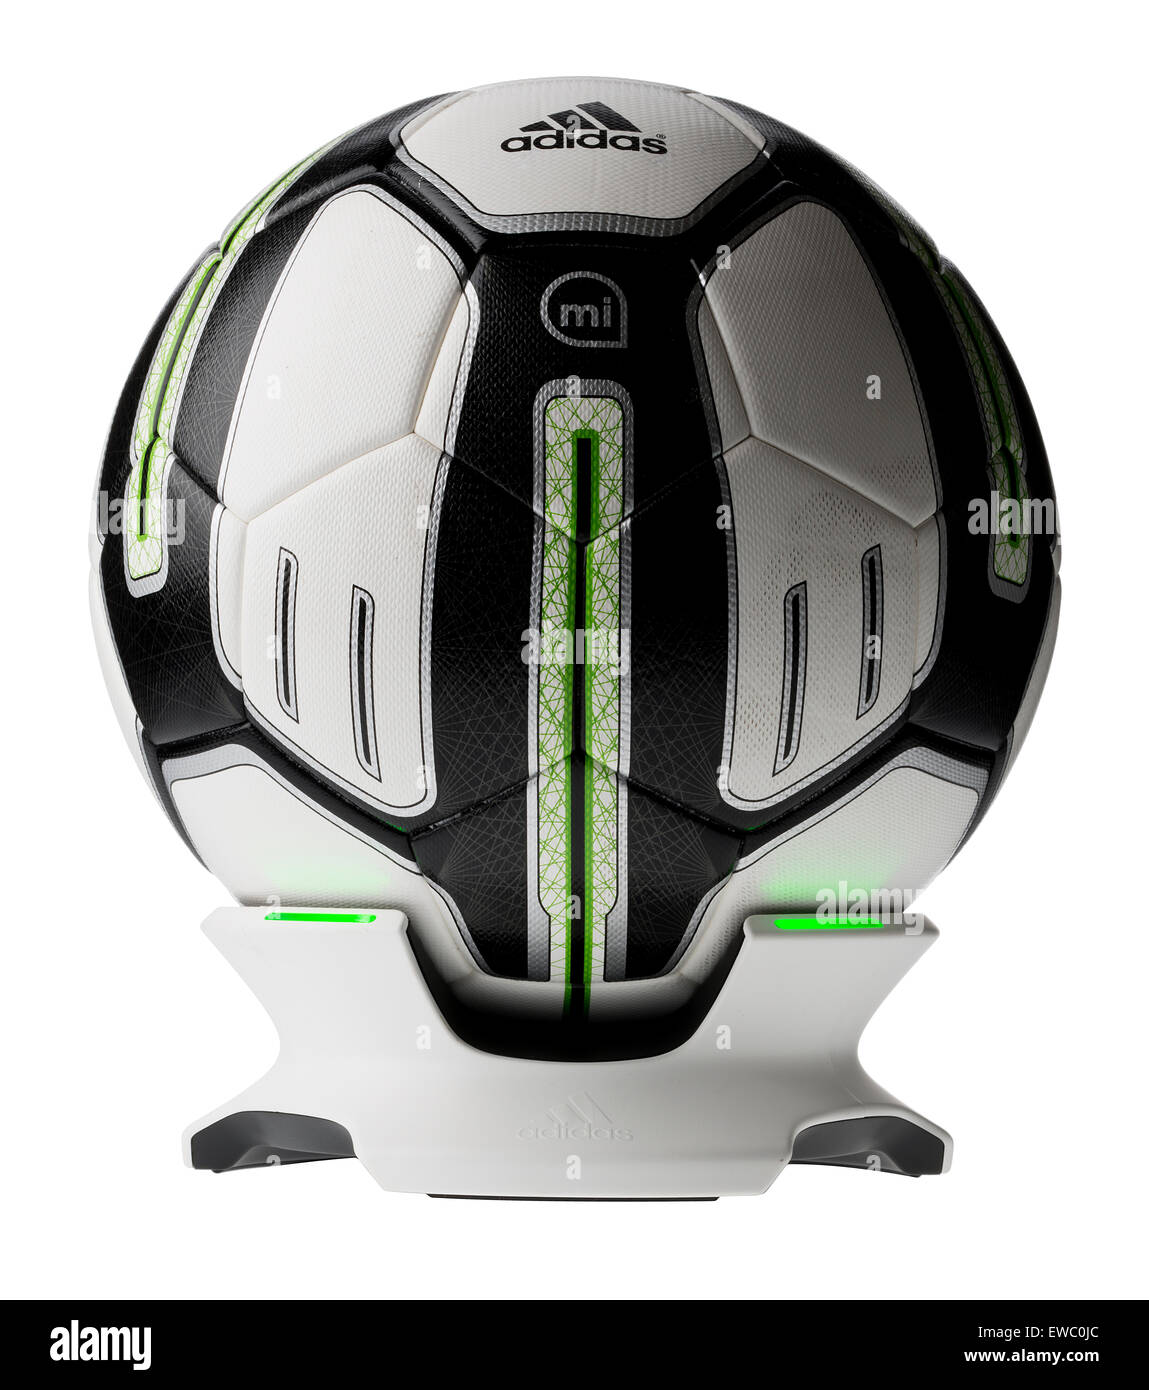 Adidas MiCoach Fußball. Trainingsprogramm. Intelligente Ball. Trainingsball mit integriertem Sensor. Stockfoto